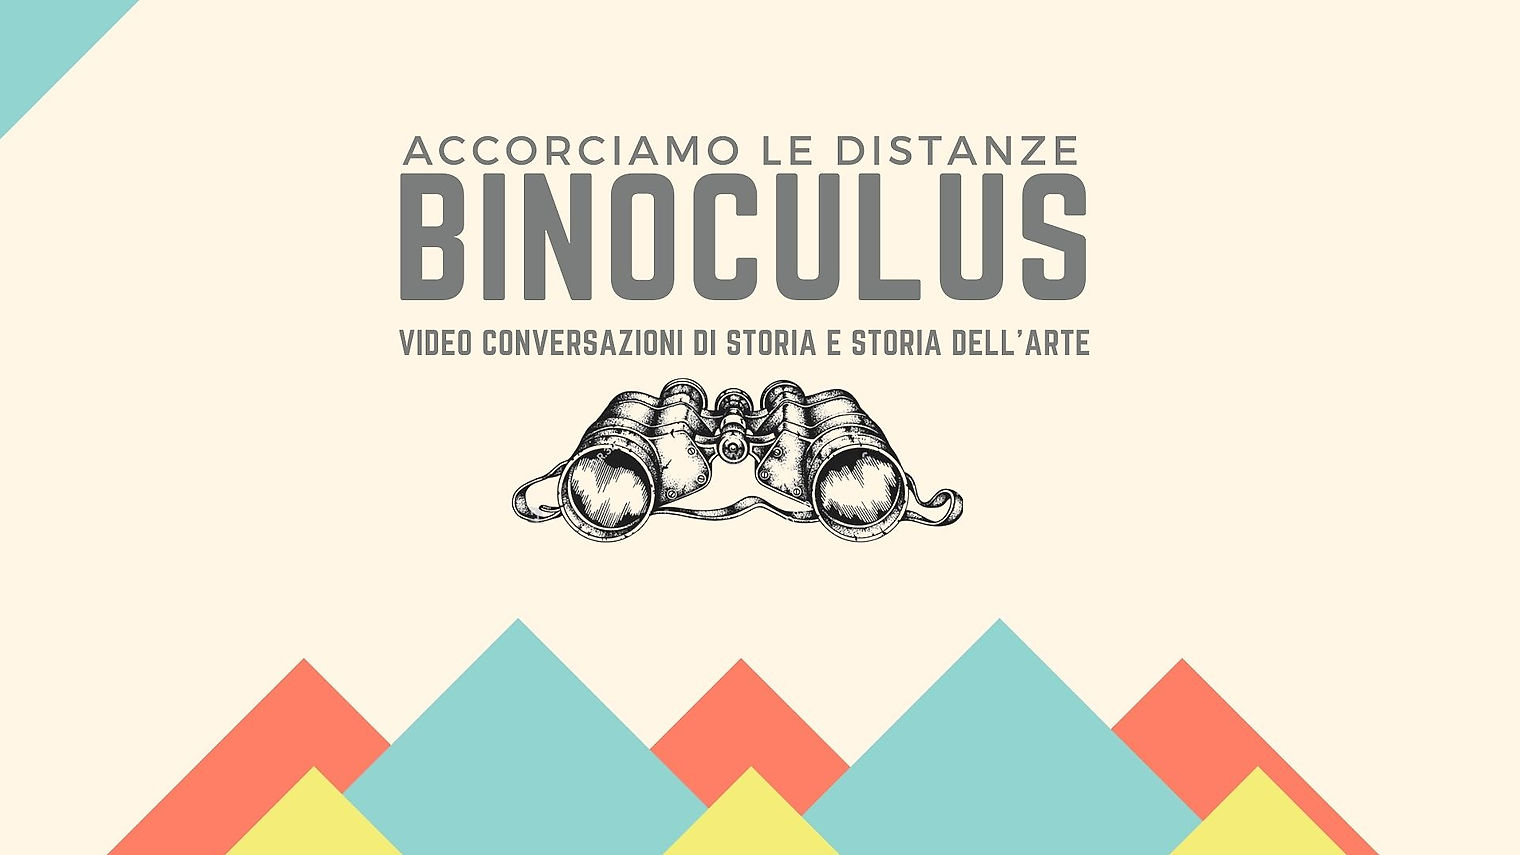 Binoculus, video conversazioni